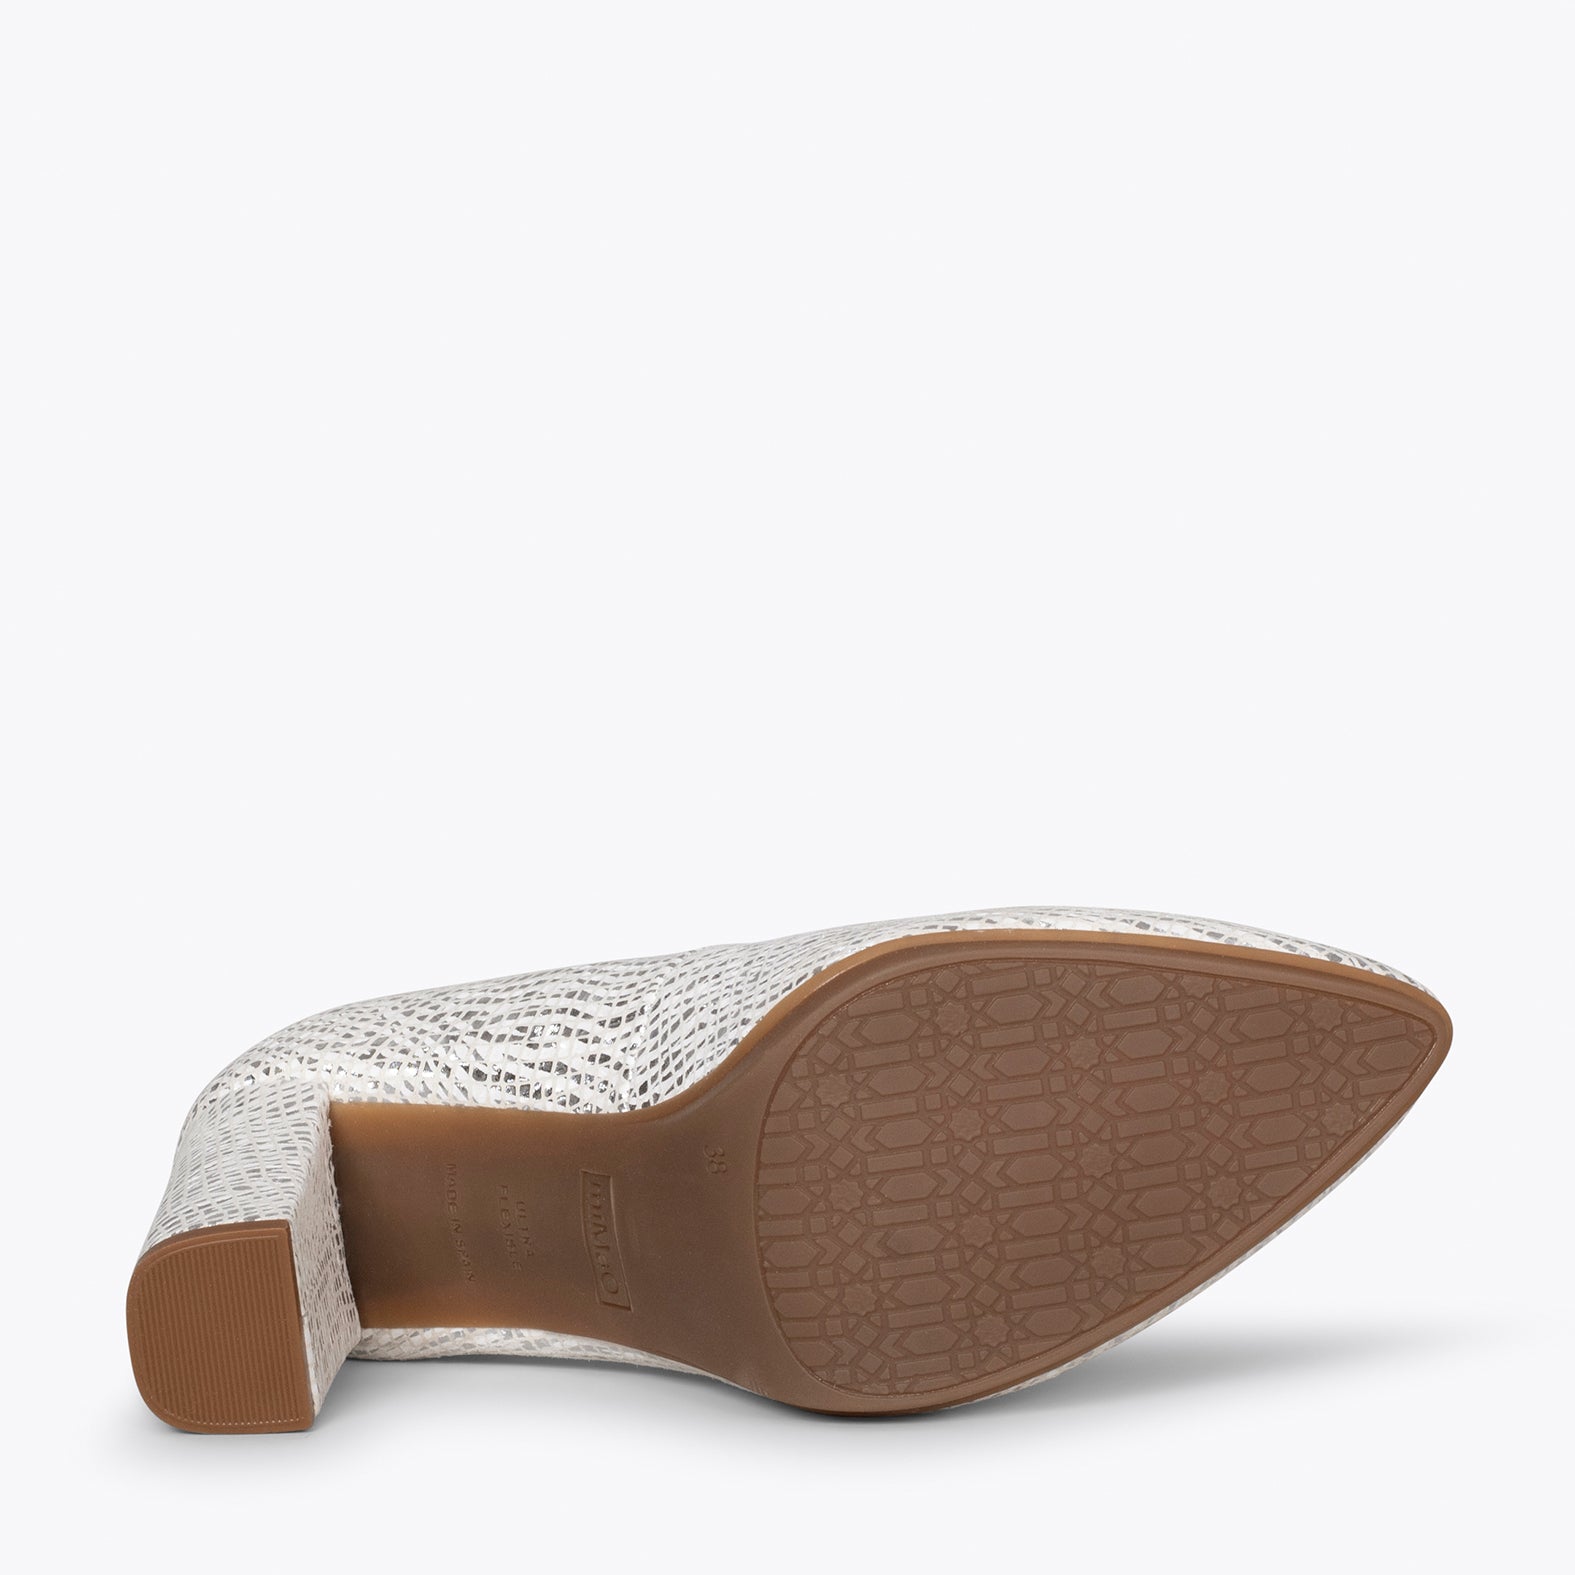 URBAN SPLASH - Zapatos de piel metalizada BLANCO